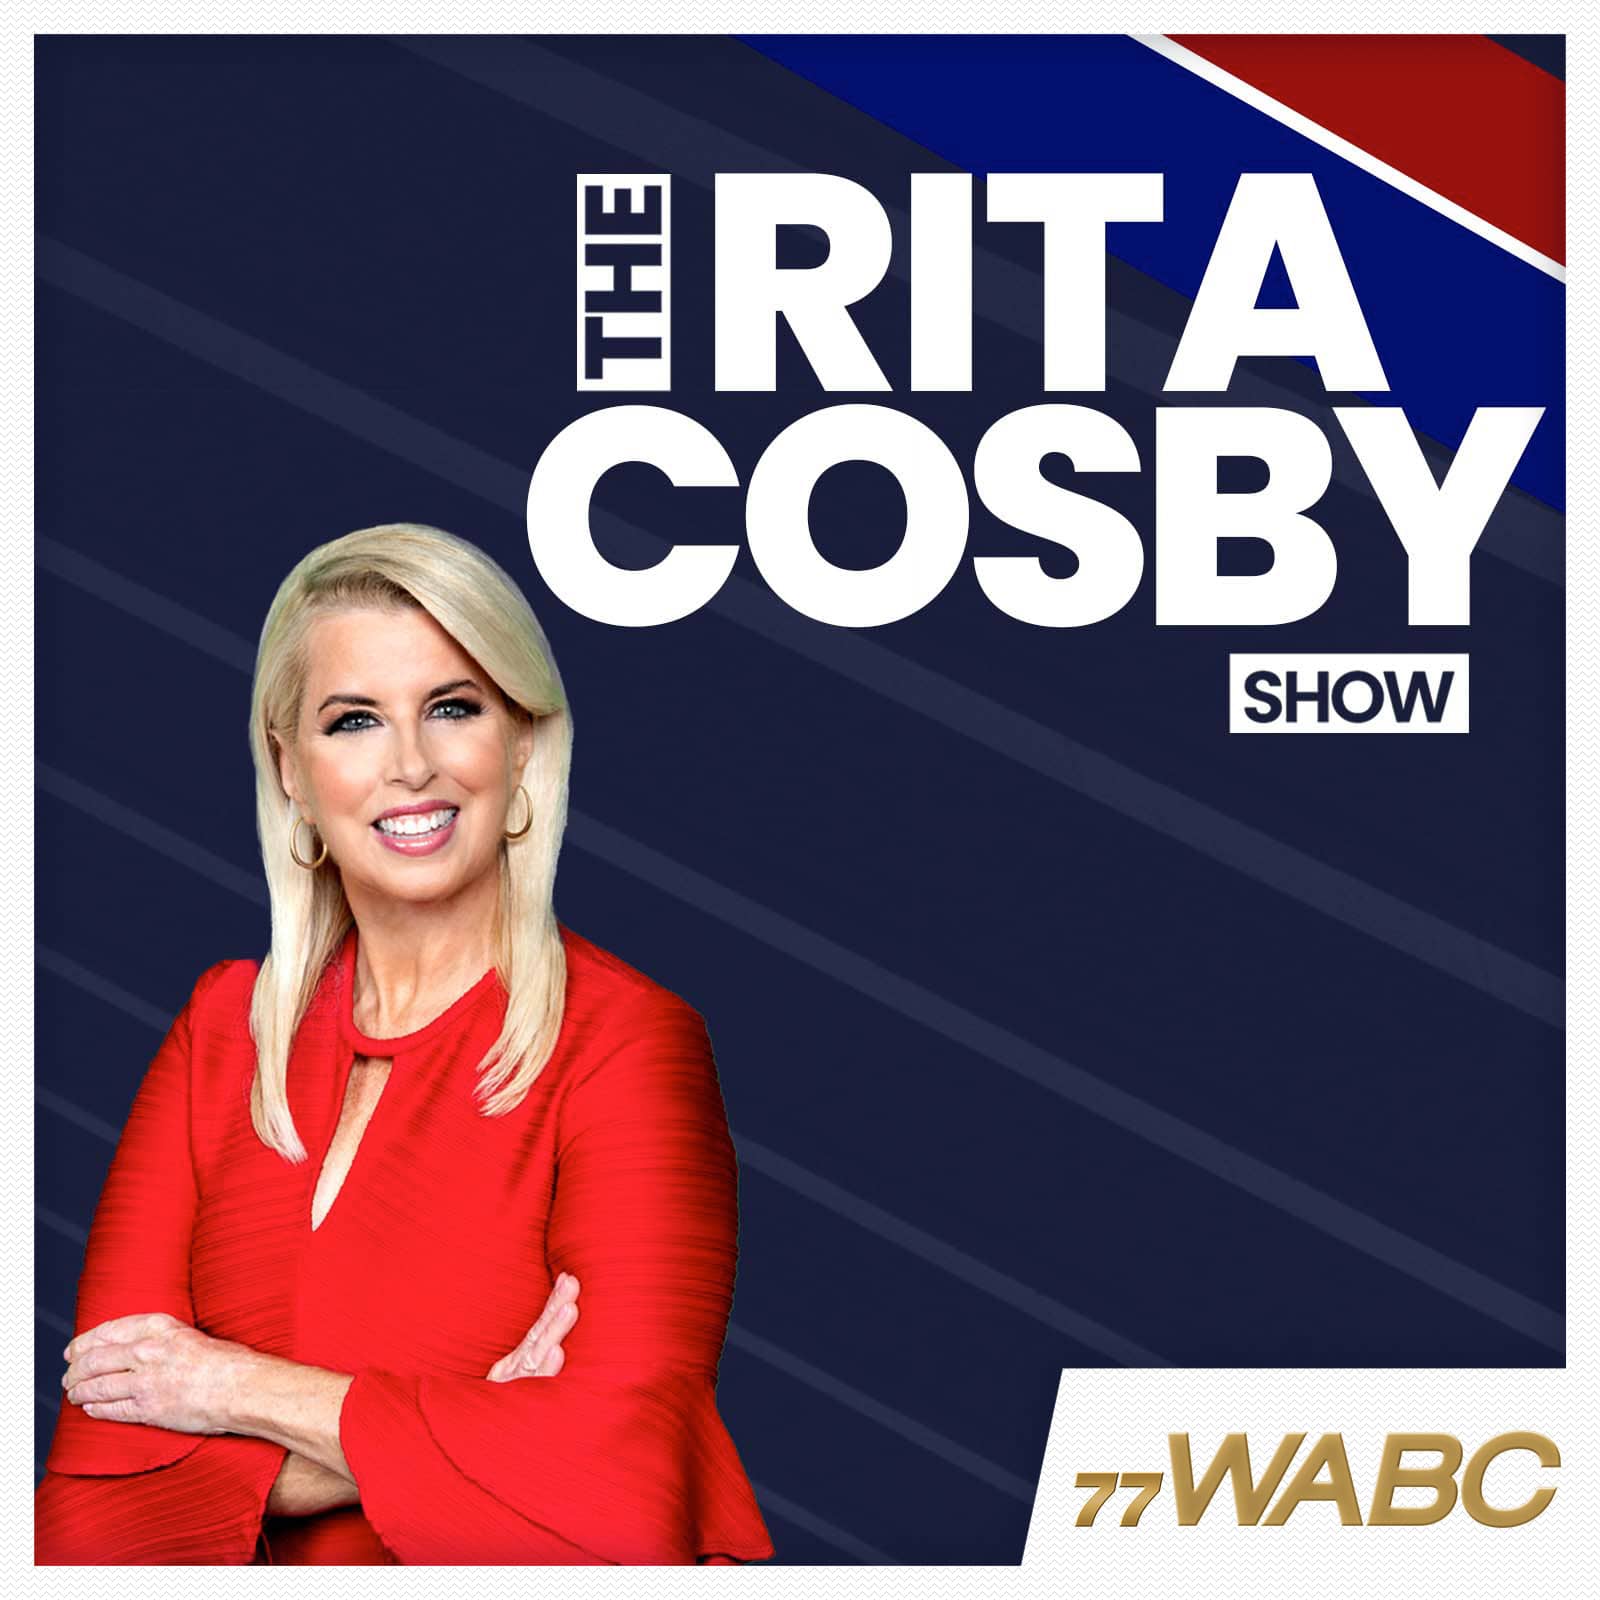 rita-cosby-podcast-new-logo-211